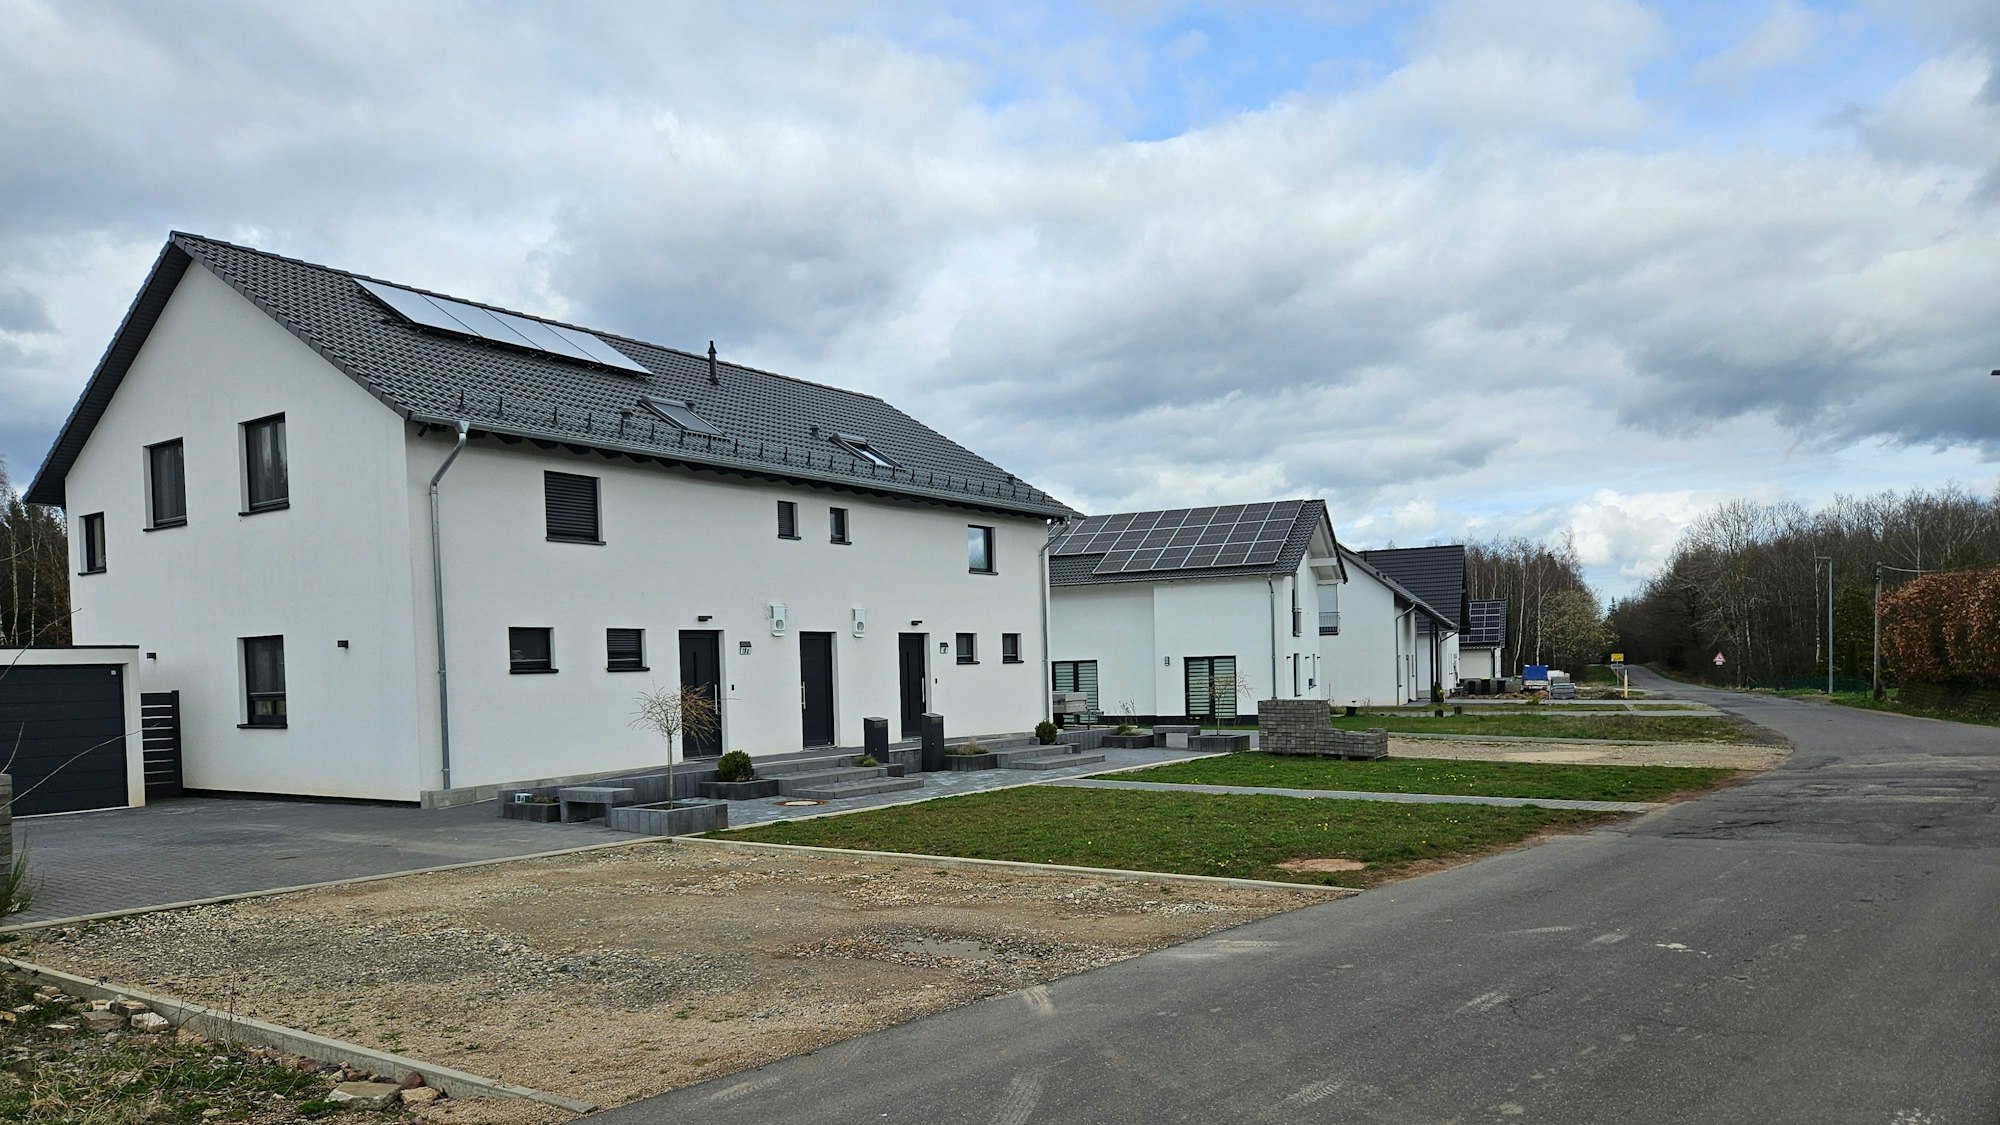 Blick auf einige Häuser in einem Neubaugebiet in Broich.